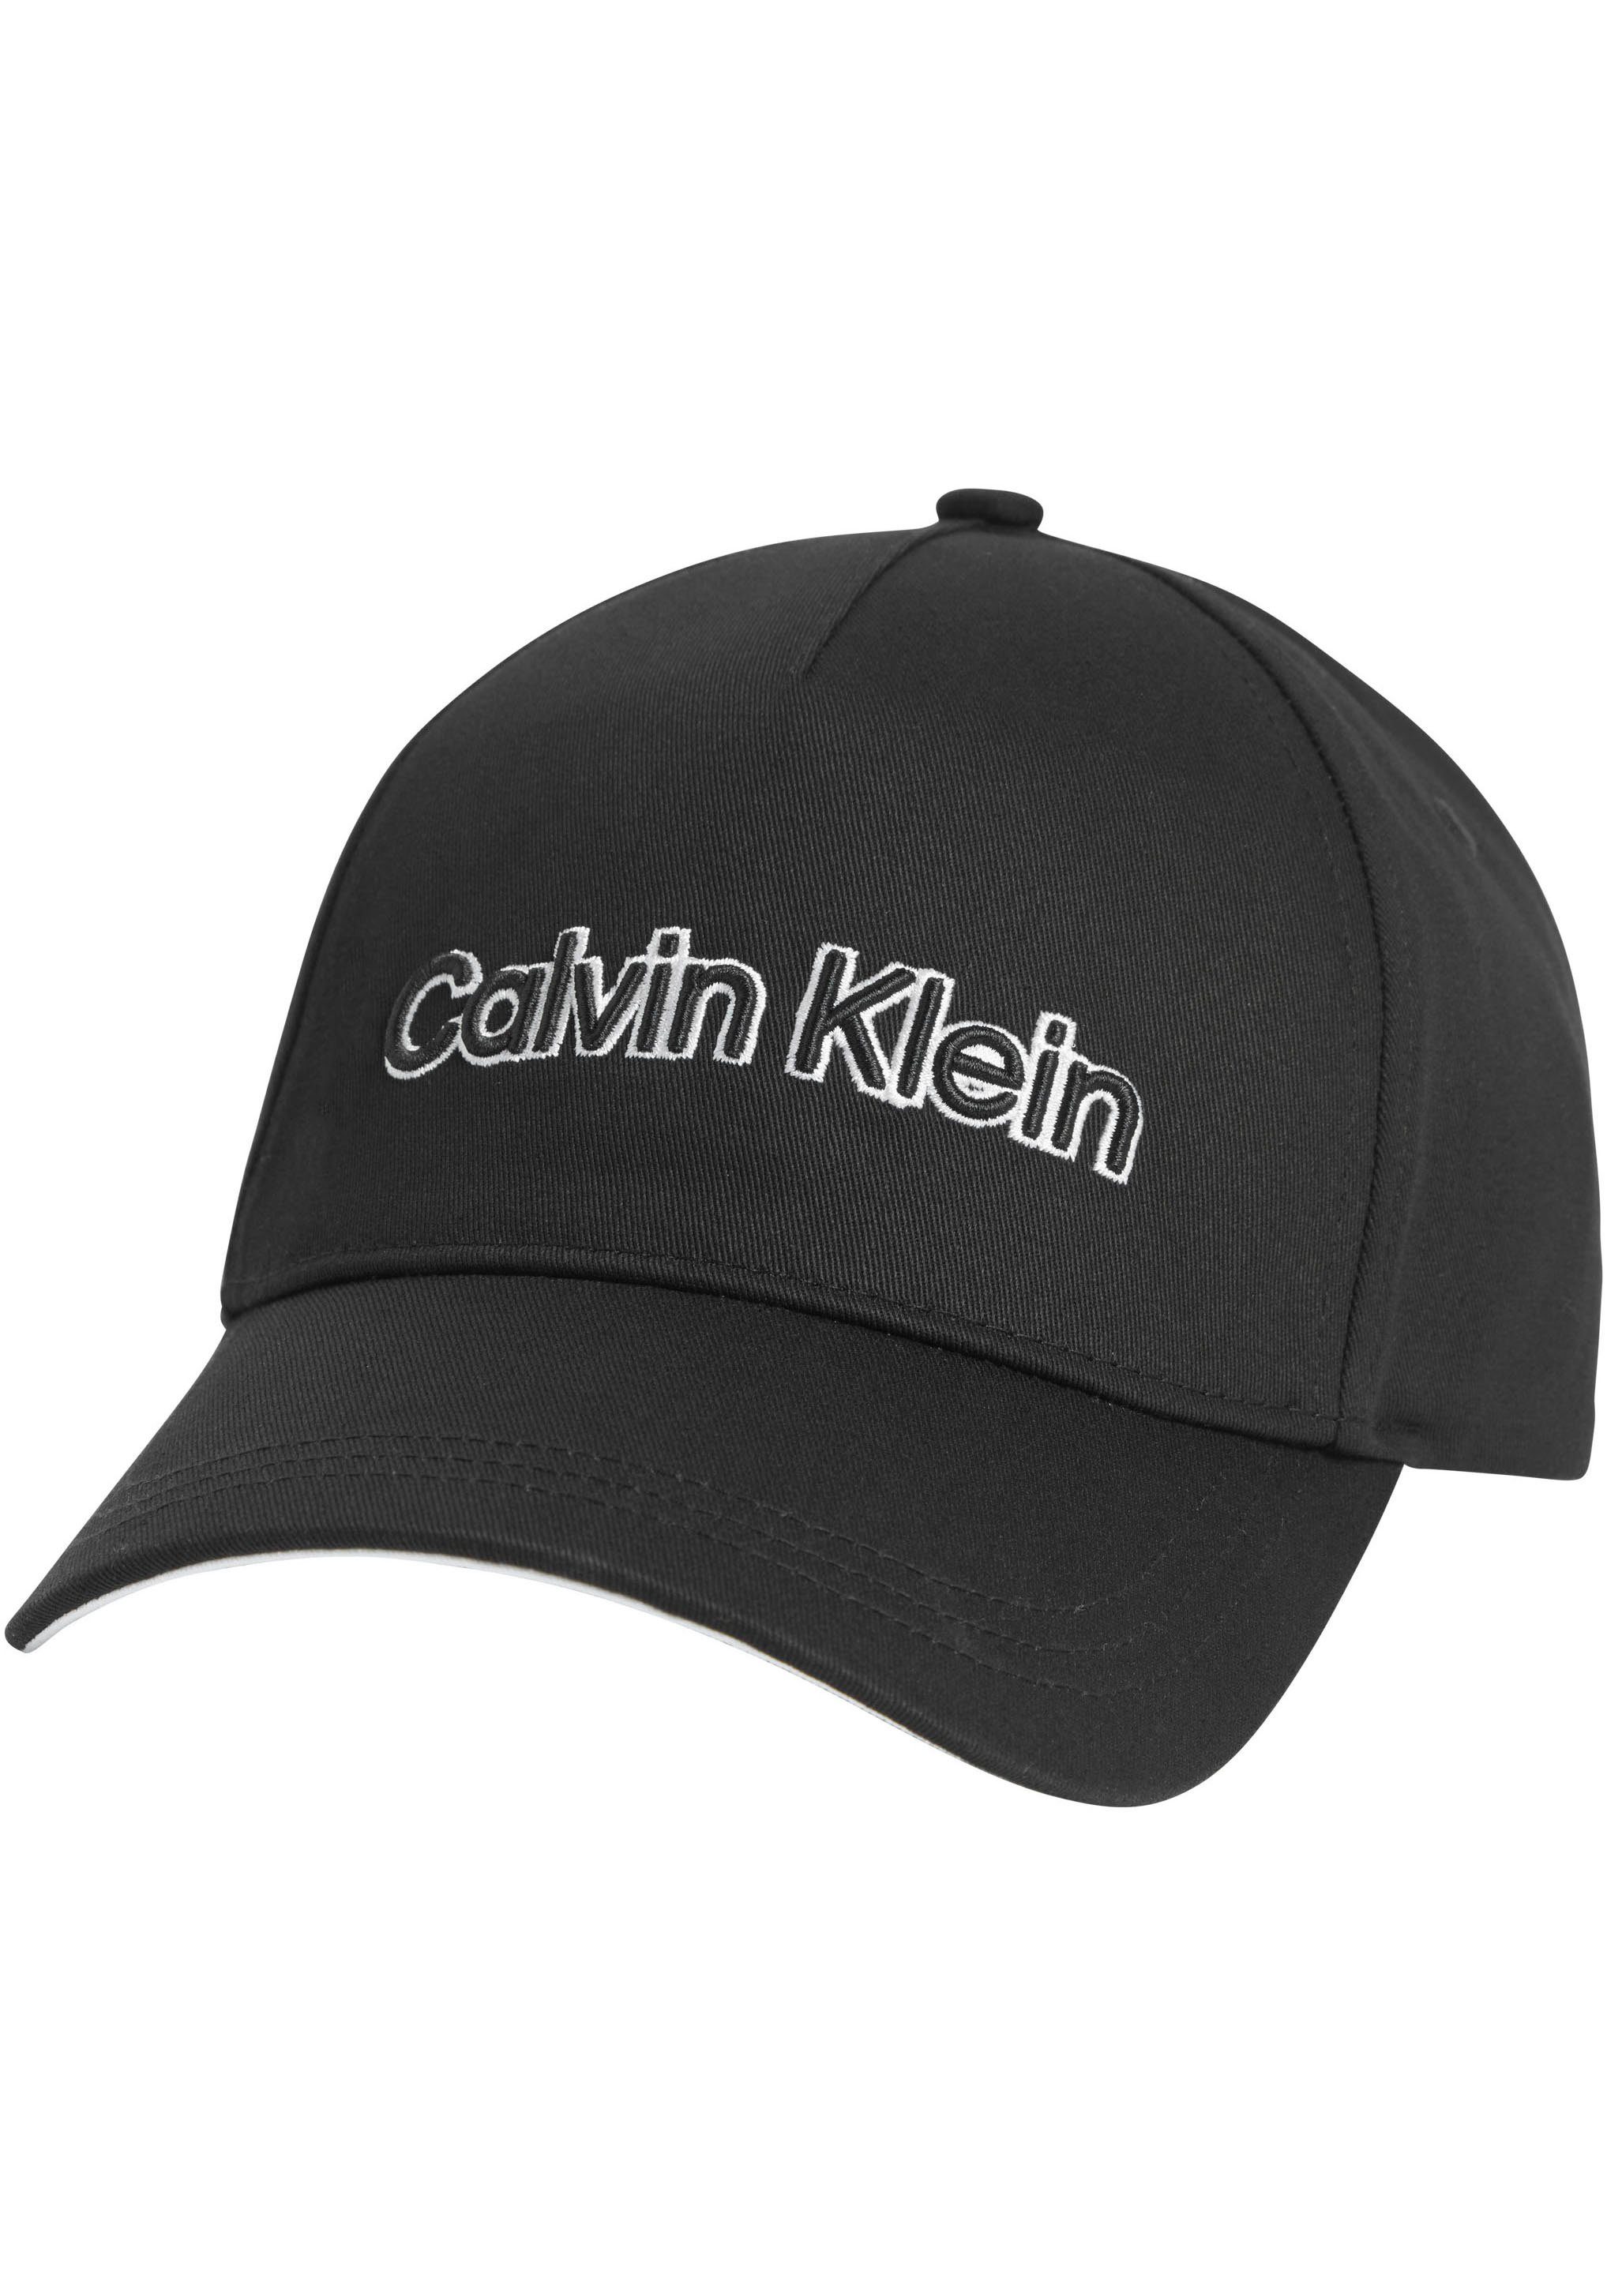 Klein Baseball BB CAP Cap Calvin EMBROIDERY